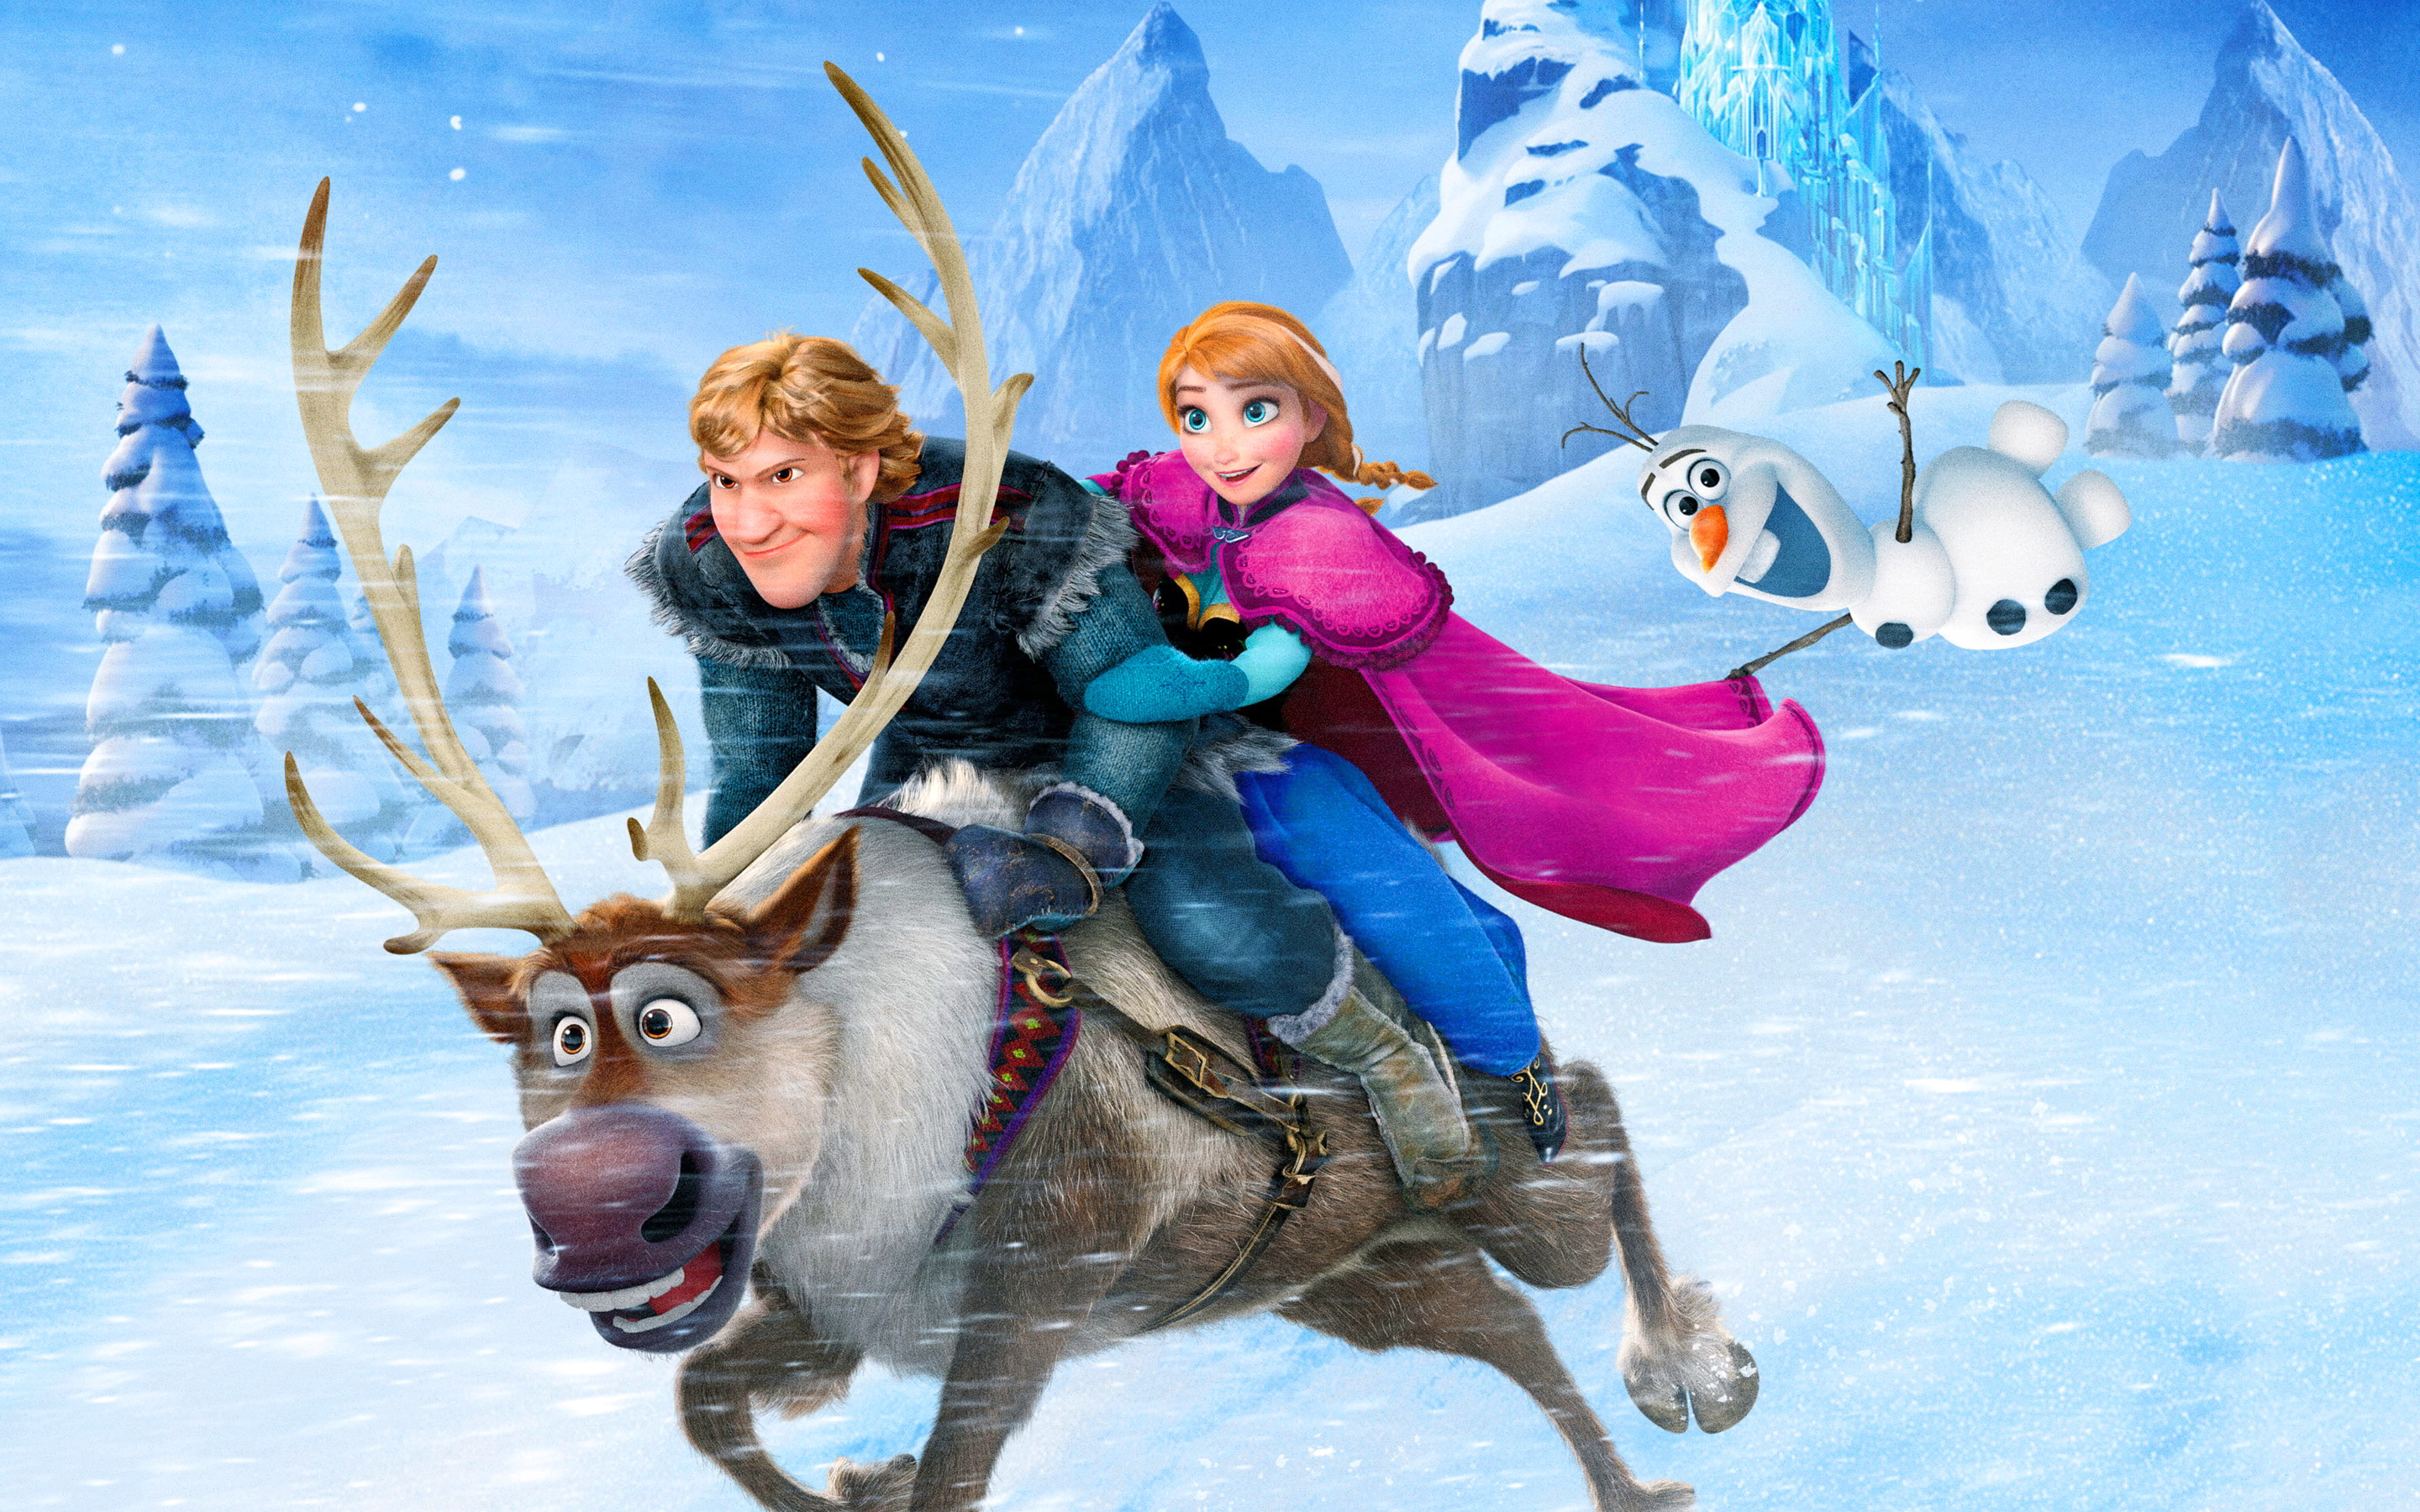 Prizor iz filma »Frozen« (»Snježno kraljevstvo«, 2013)